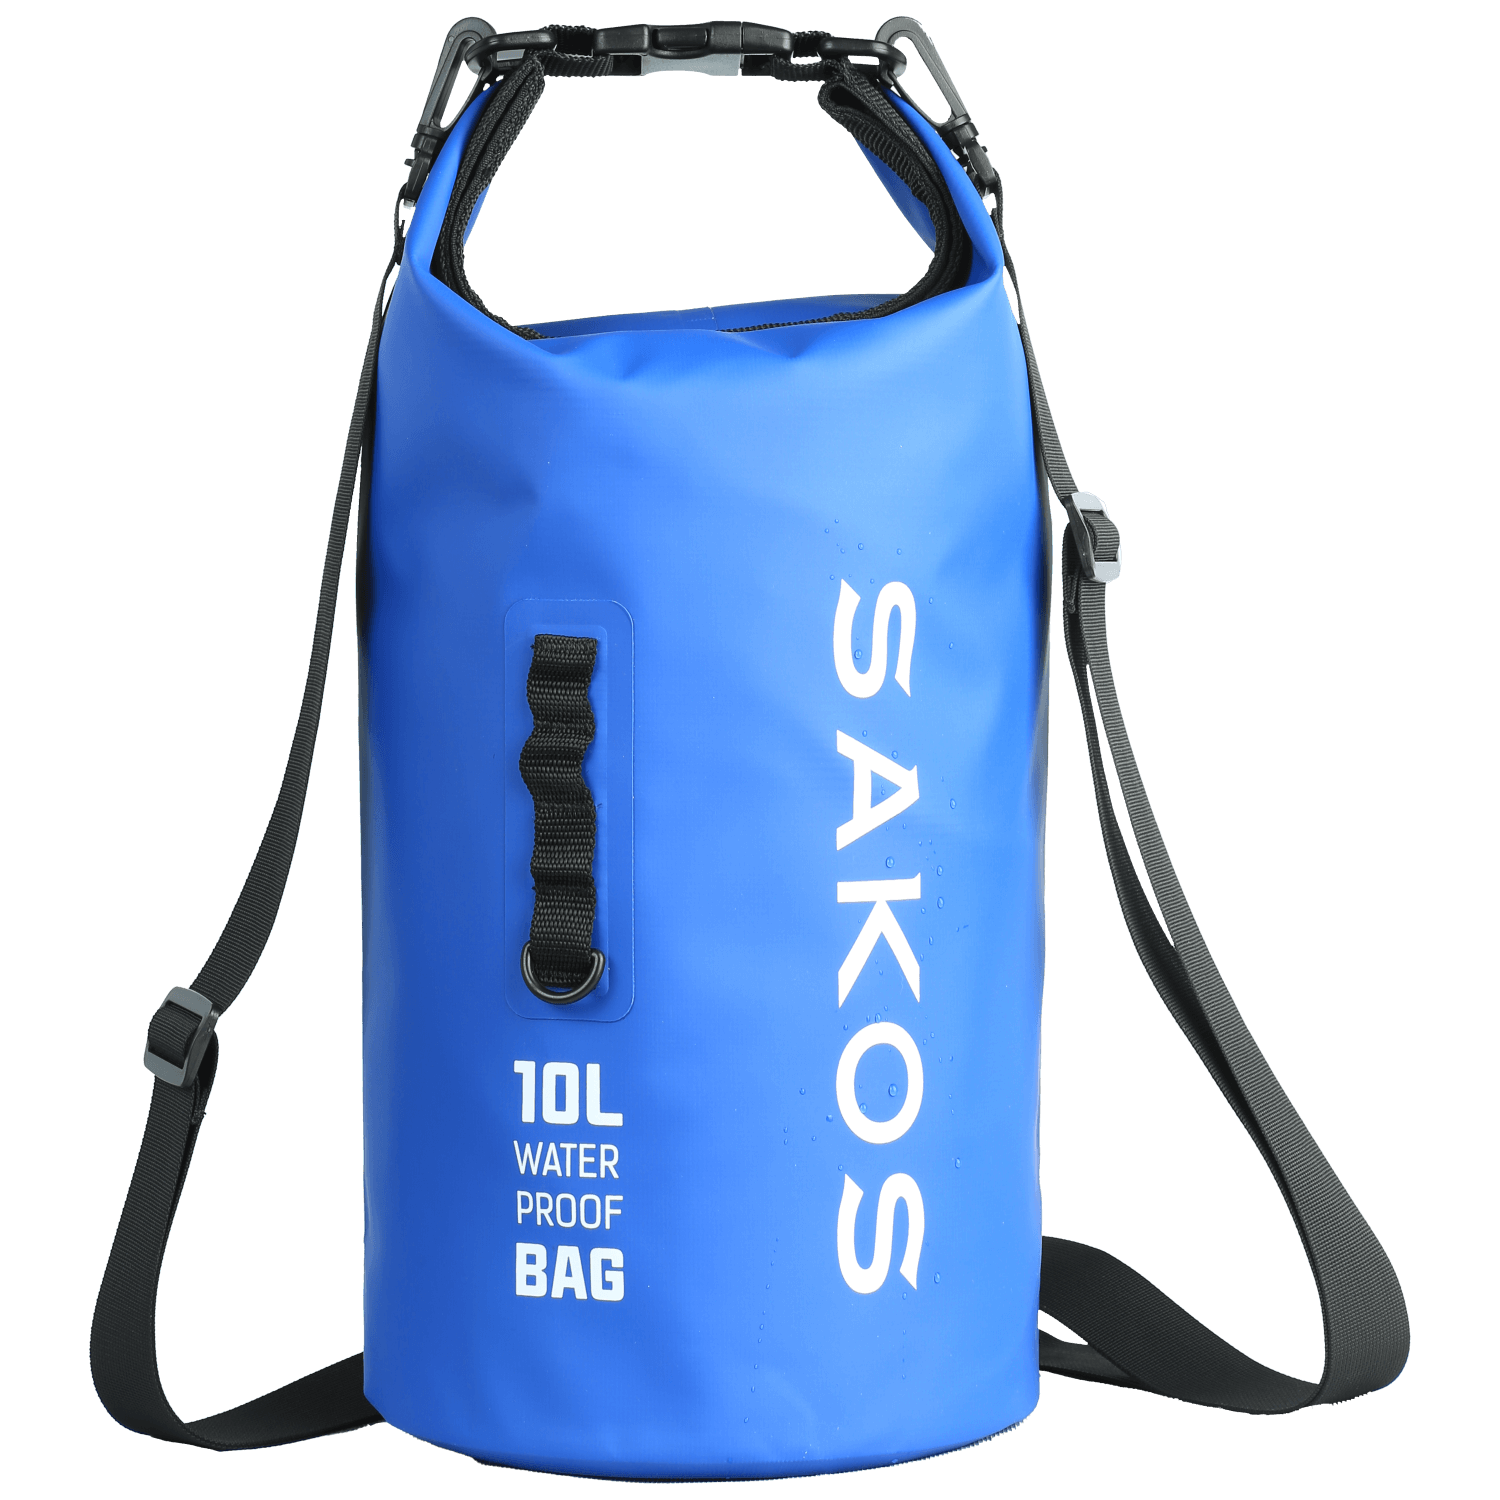 Túi chống nước đi biển Sakos Orcas 10L xanh dương